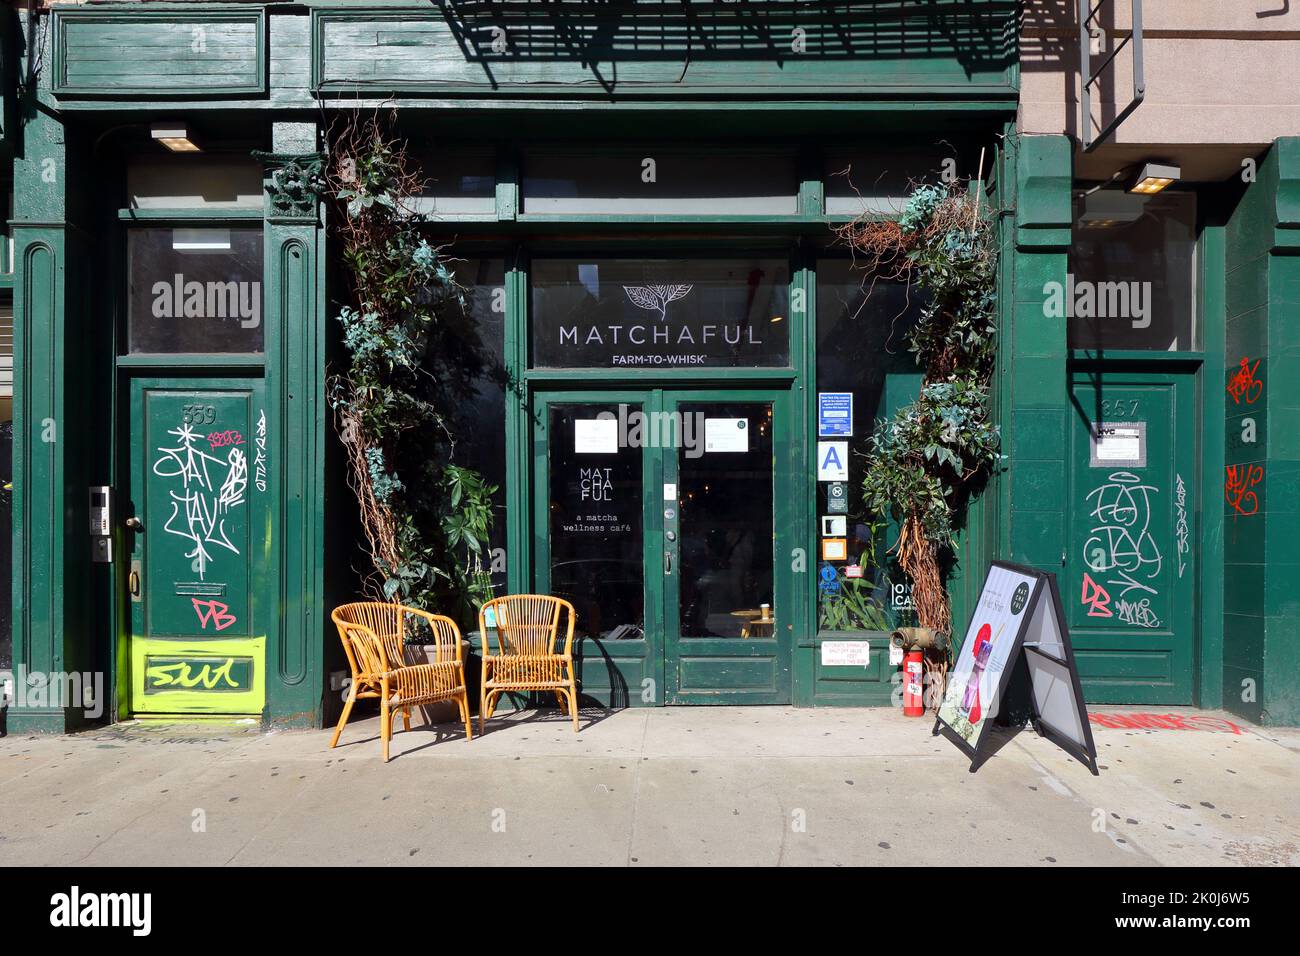 Matchaful, 359 Canal St, New York, NYC Schaufensterfoto eines veganen Matcha-Cafés in Manhattans Viertel Tribeca. Stockfoto